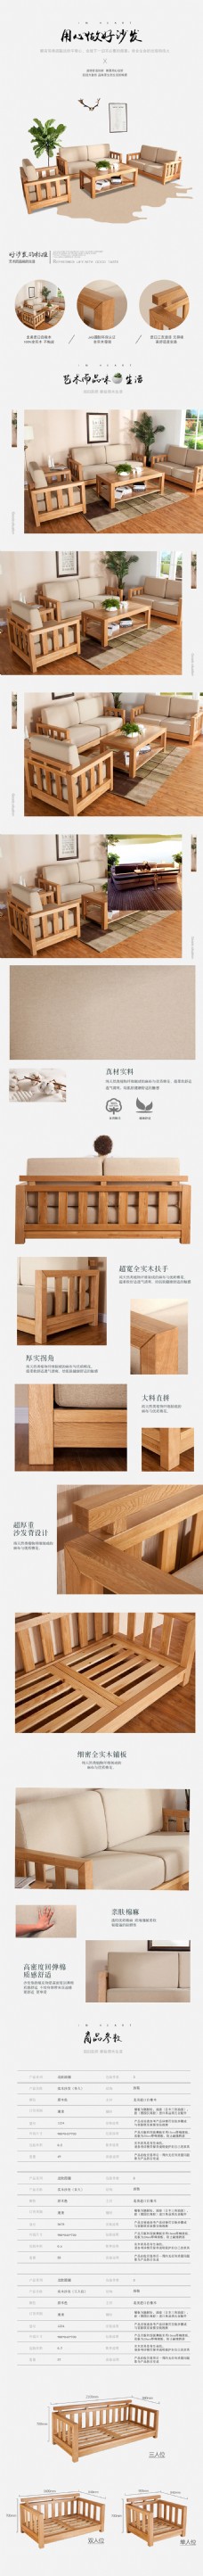 现代生活之日式IKEA家具温馨家沙发家具详情页设计